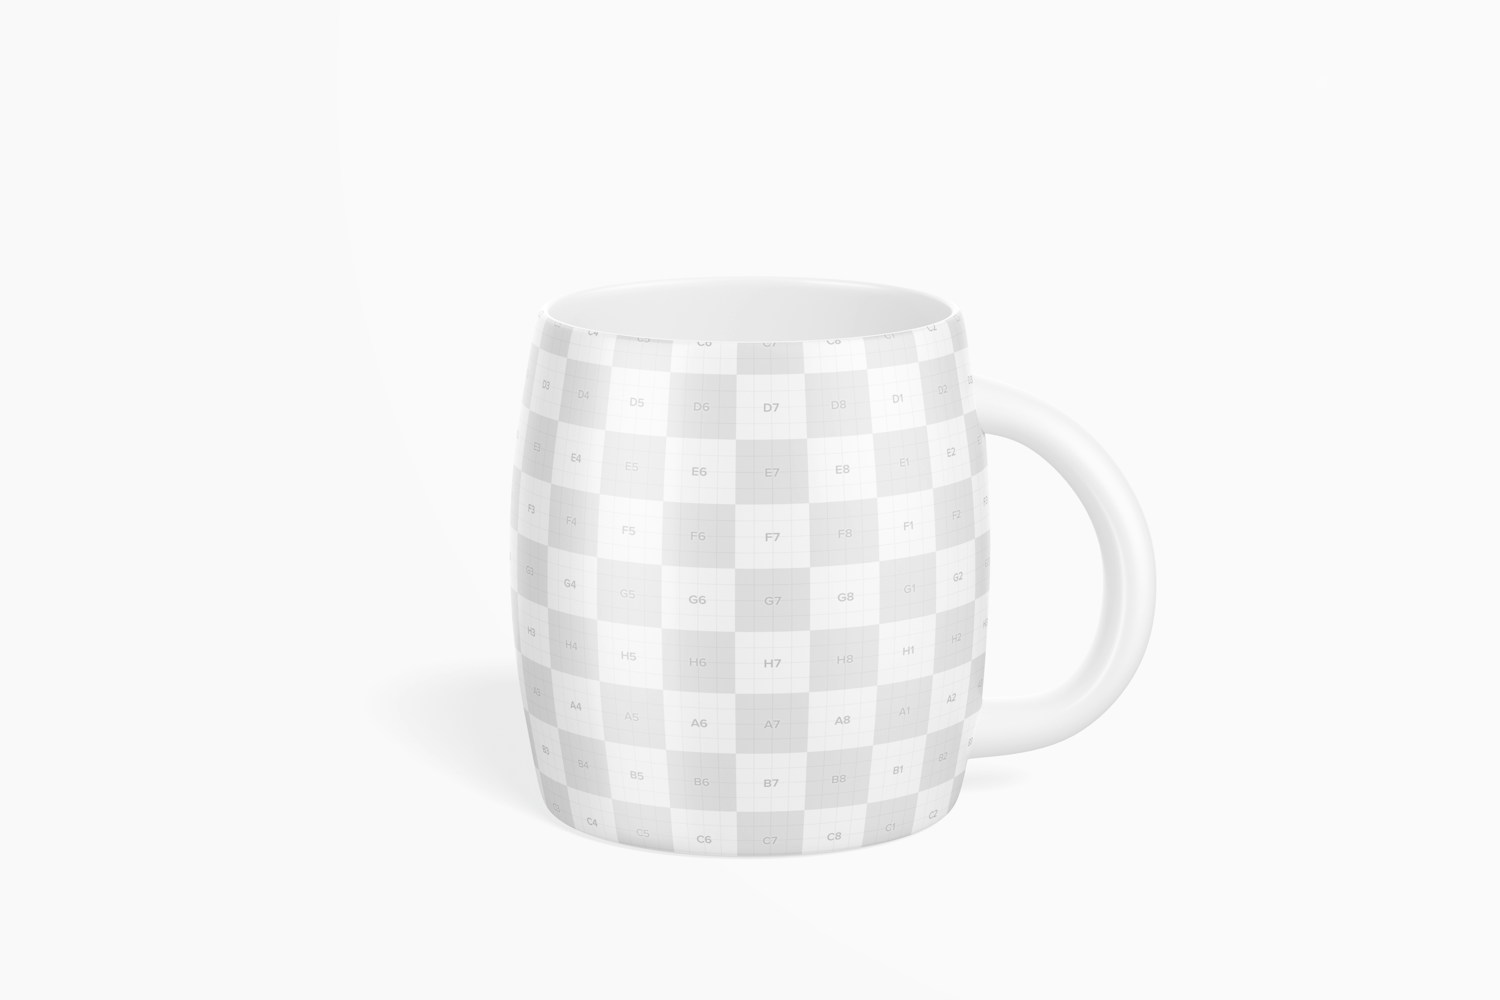 14 oz Ceramic Coffee Mug Mockup